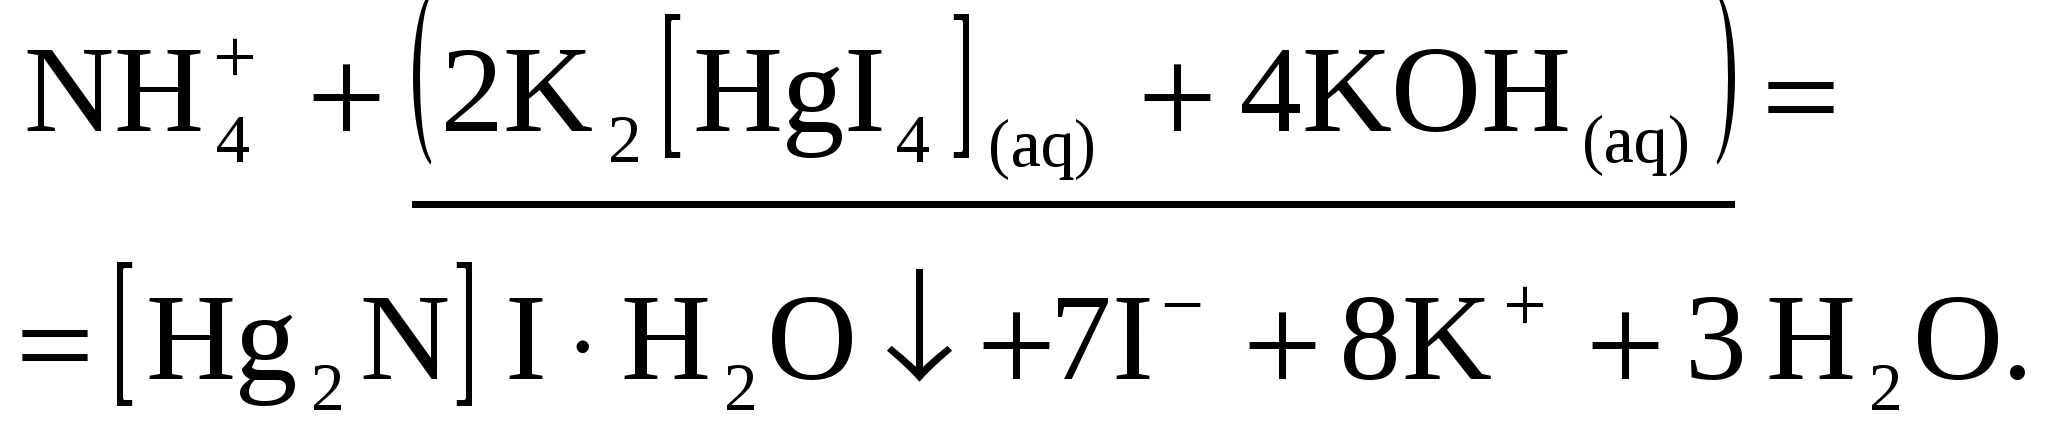 Nh4 2 so4 ba no3 2. Nh4cl реактив Несслера. K2[hgi4]. Nh4cl k2 hgi4 Koh.